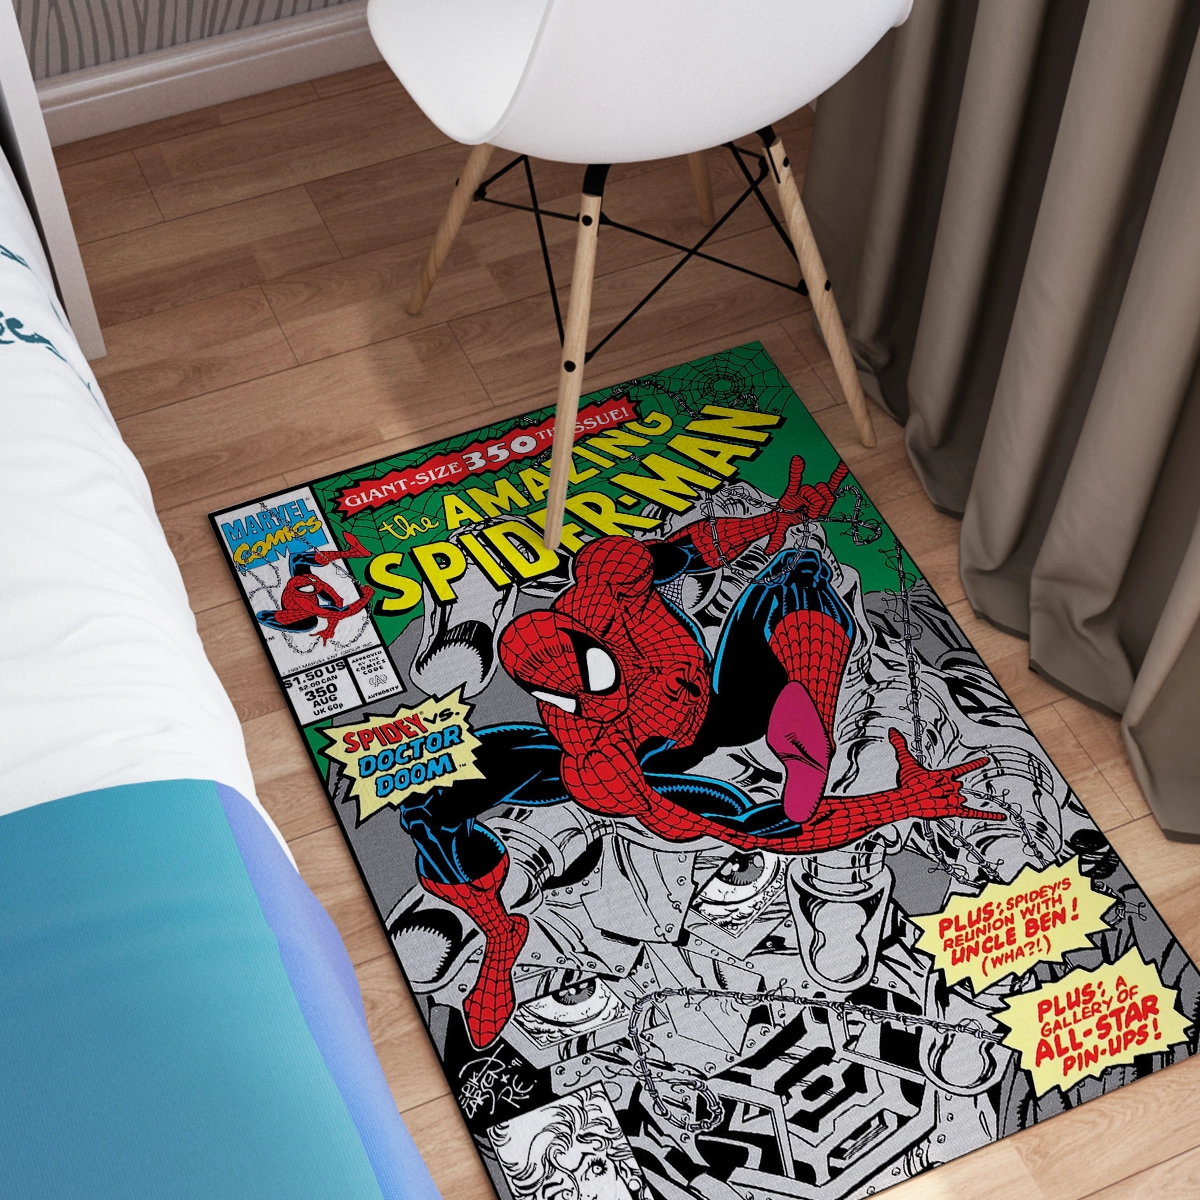 Alfombra Amazing Spider-Man #350 (1991)